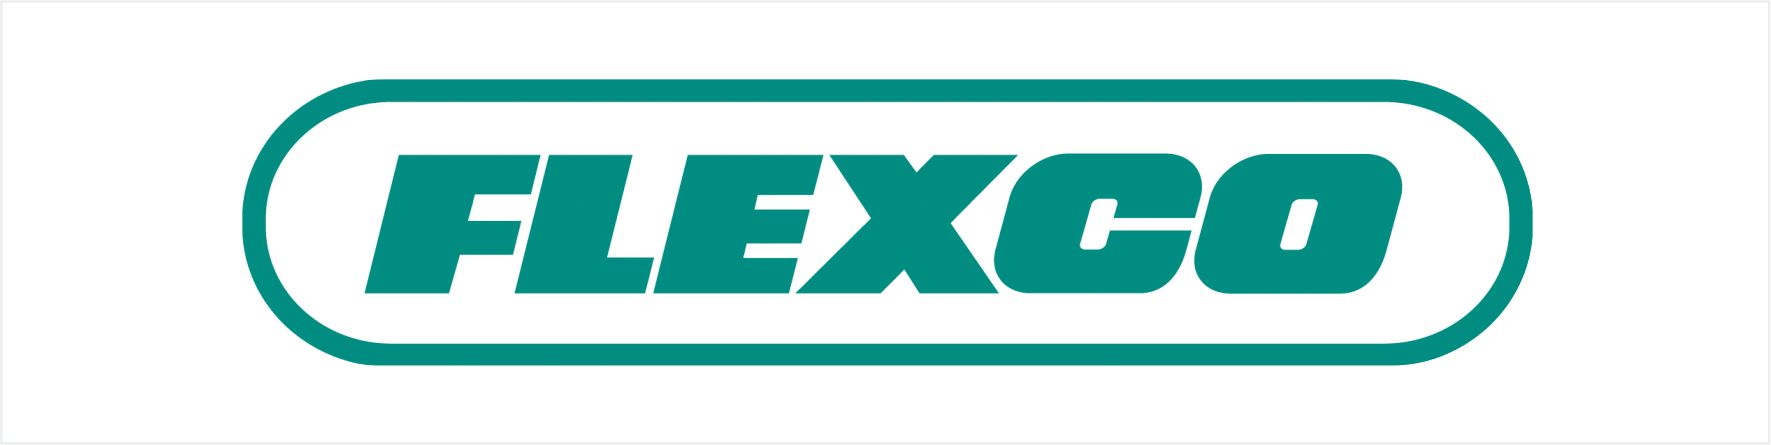 flexco logo original